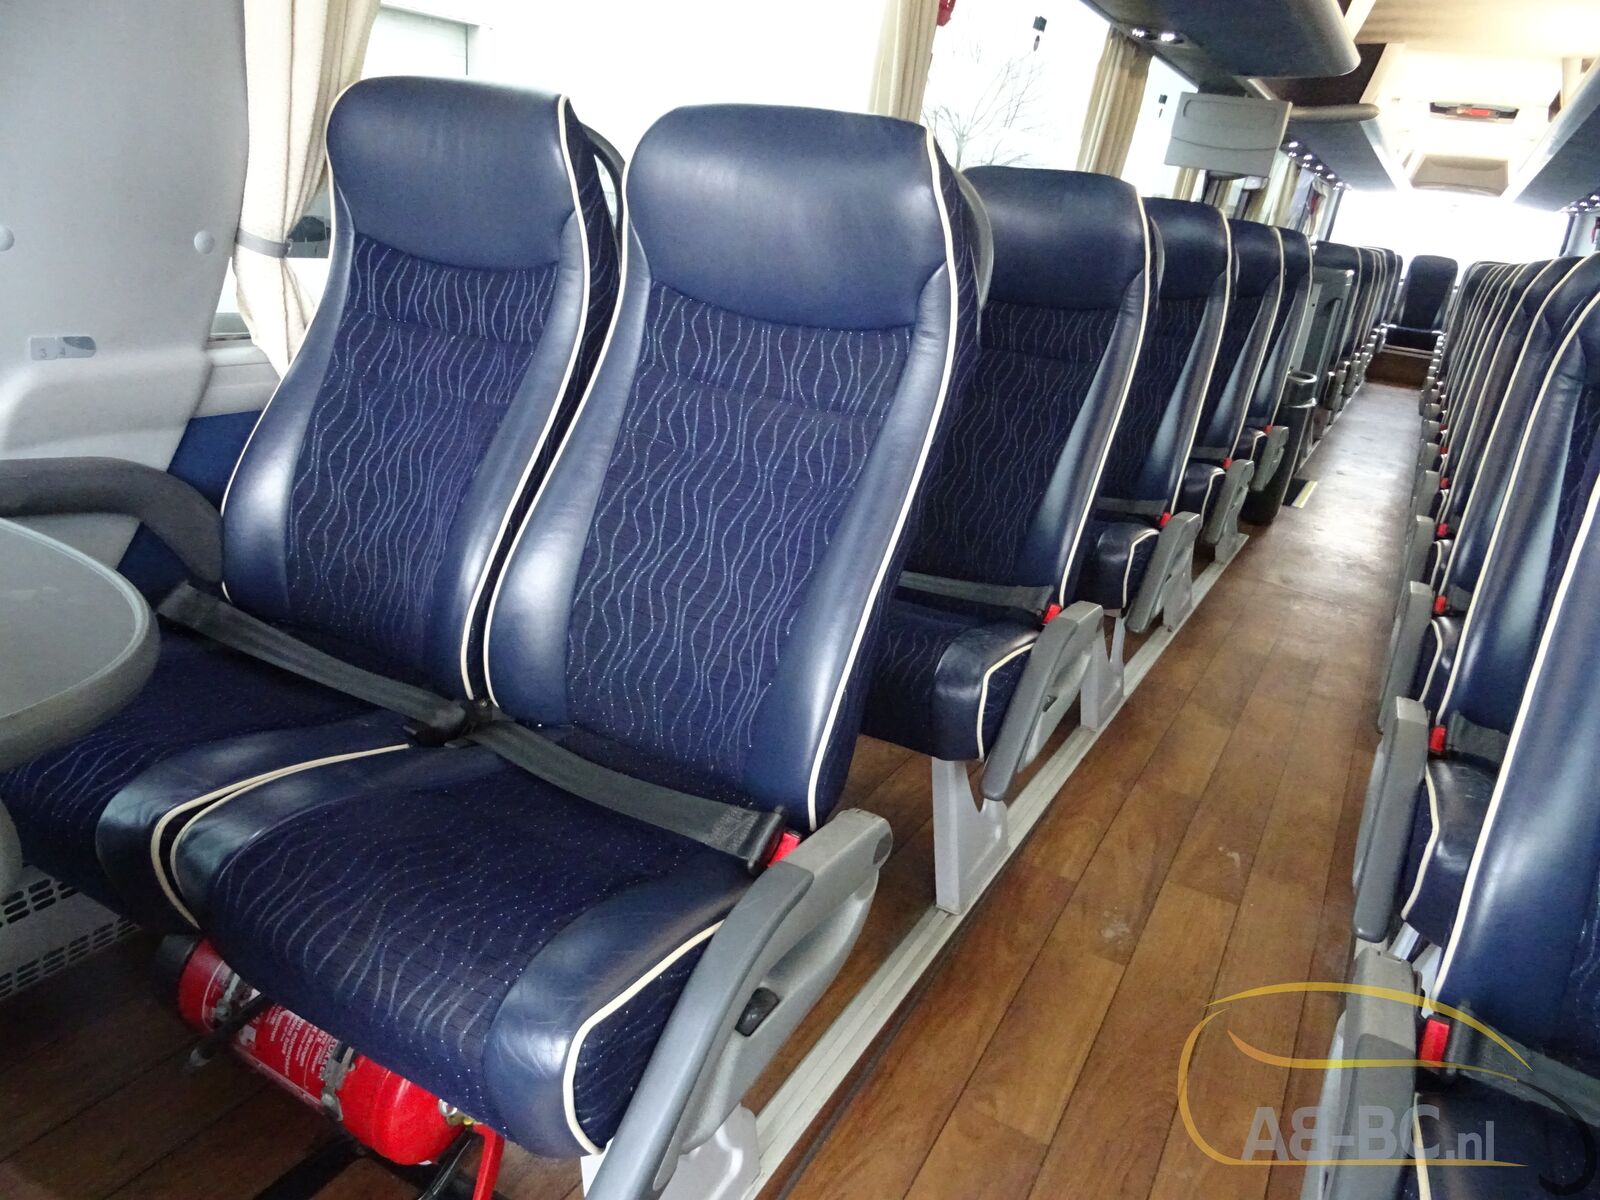 coach-bus-MAN-R08-Lions-Coach-59-Seats-EURO-6-6-wheelchair-places---1675763489993297083_orig_da1246a32611cb37b3271d4807f8940e--23020711482134347500